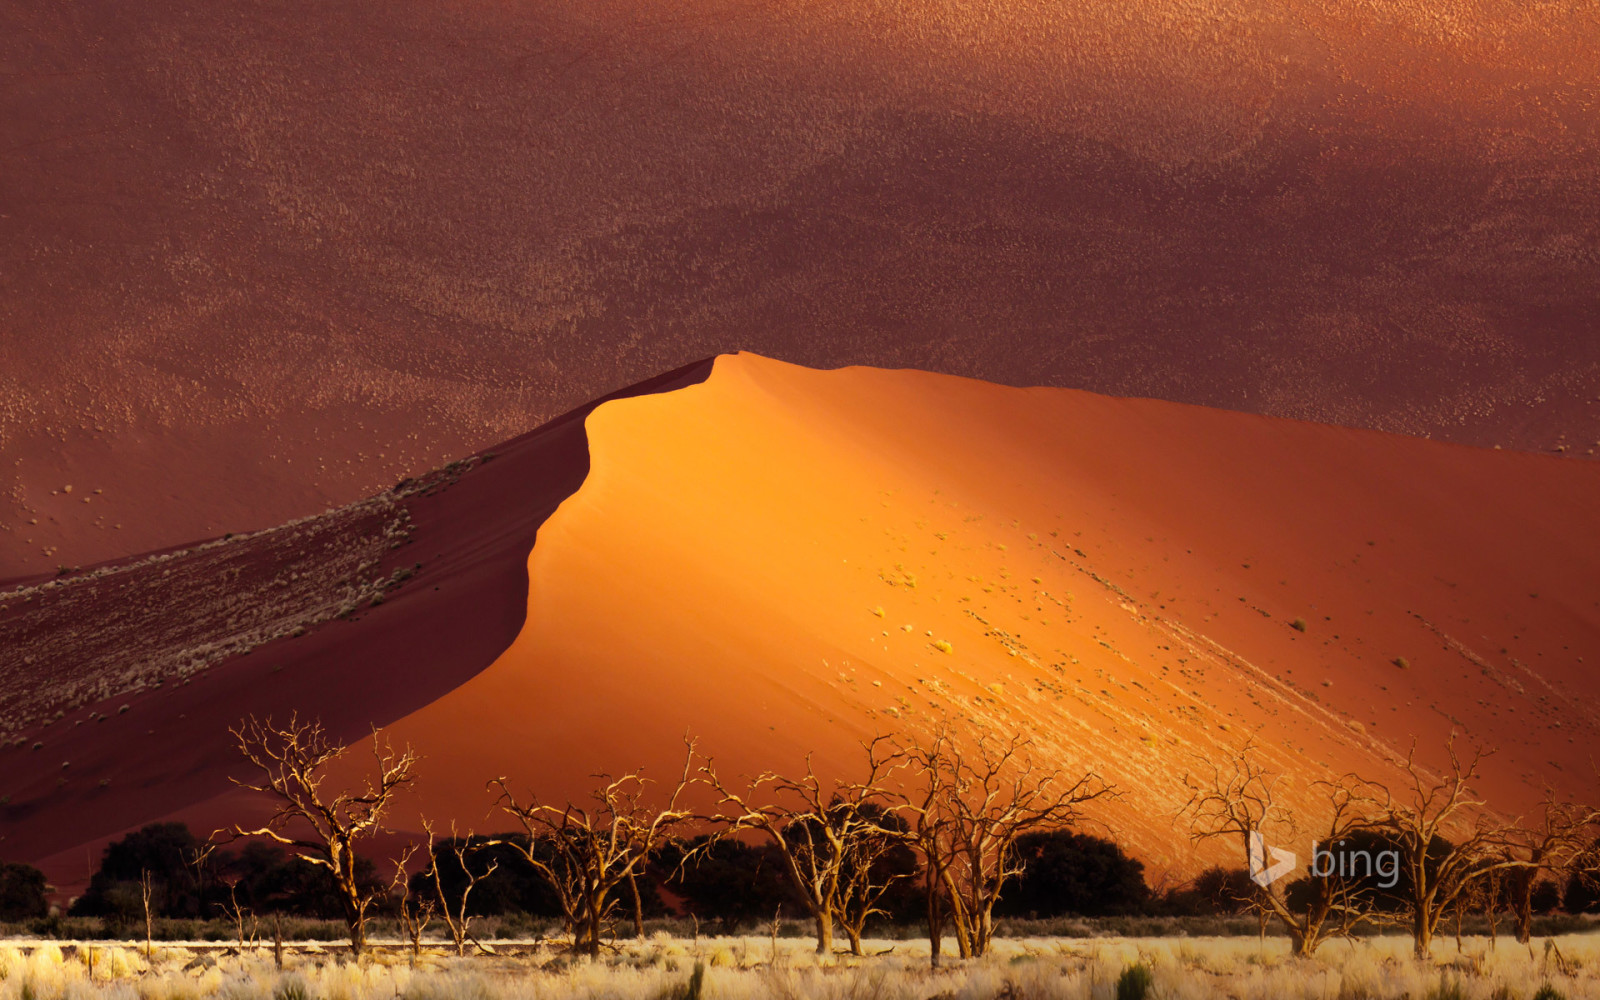 cây, Sa mạc, cát, Châu phi, cồn cát, Namibia, Sossusvlei